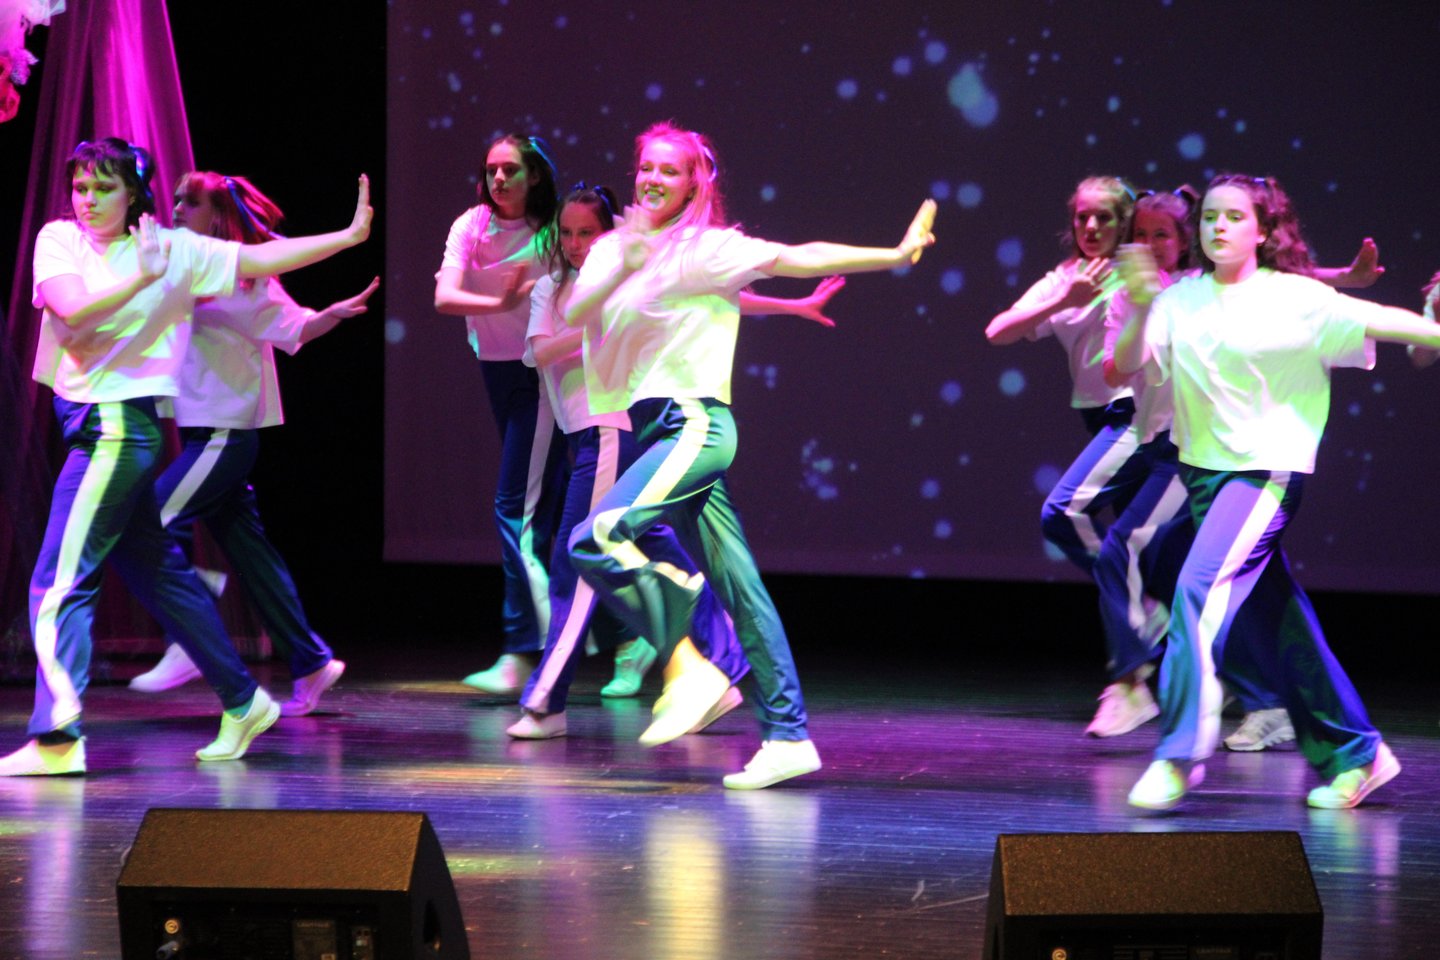 Molėtų kultūros centre vaikai renkasi teatro užsiėmimus, choreografiją, muziką, etninę kultūrą.<br>Molėtų kultūros centro nuotr.